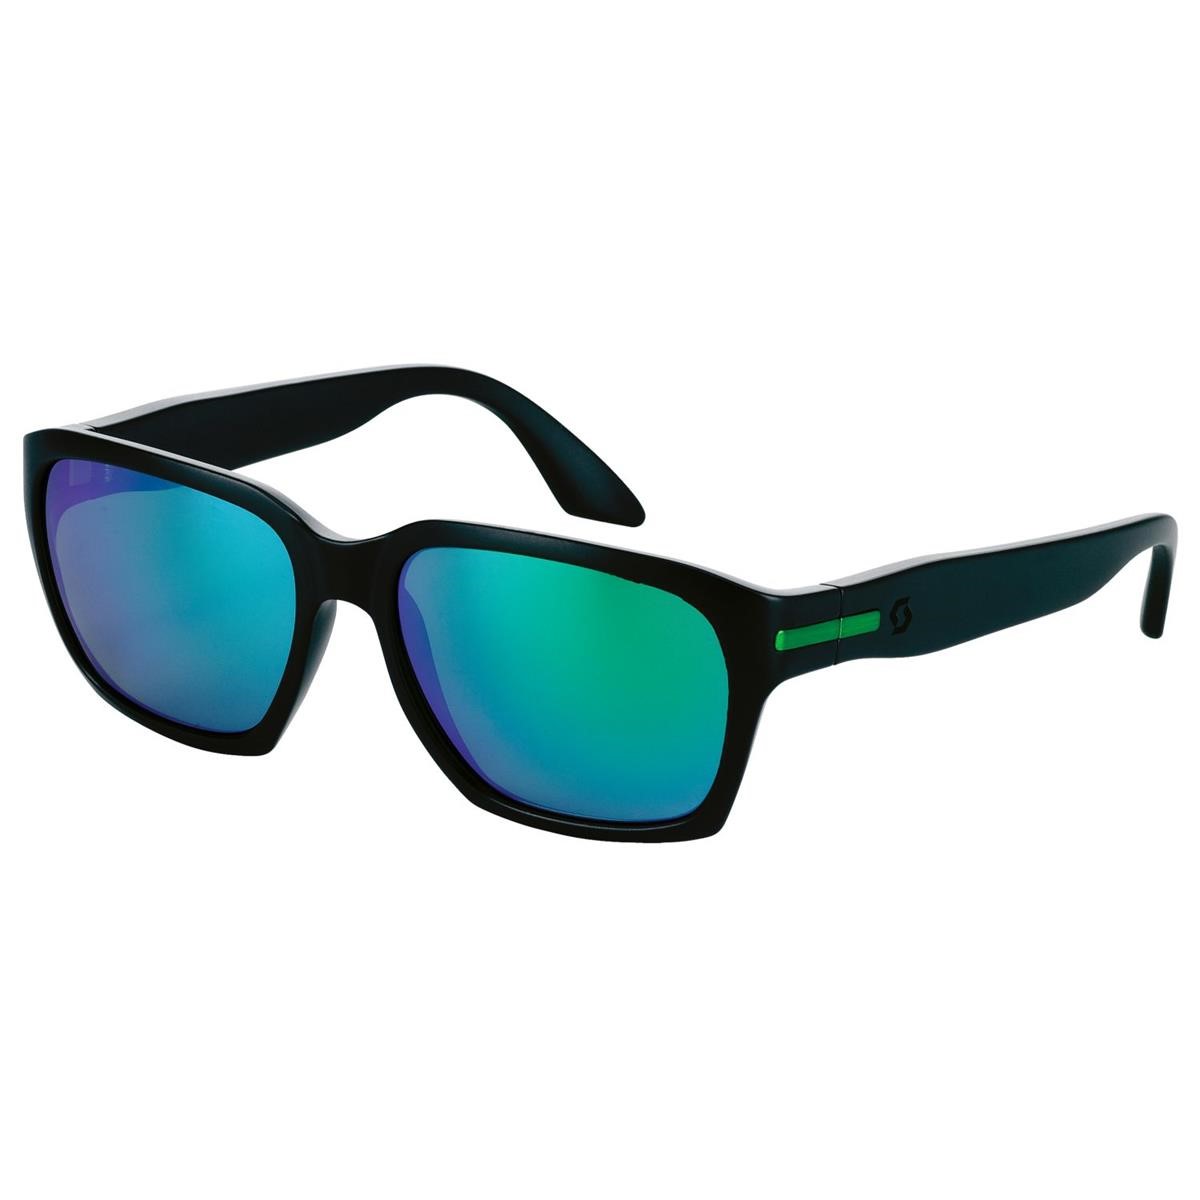 Scott Sunglasses C-Note Black Matt/Green Chrome